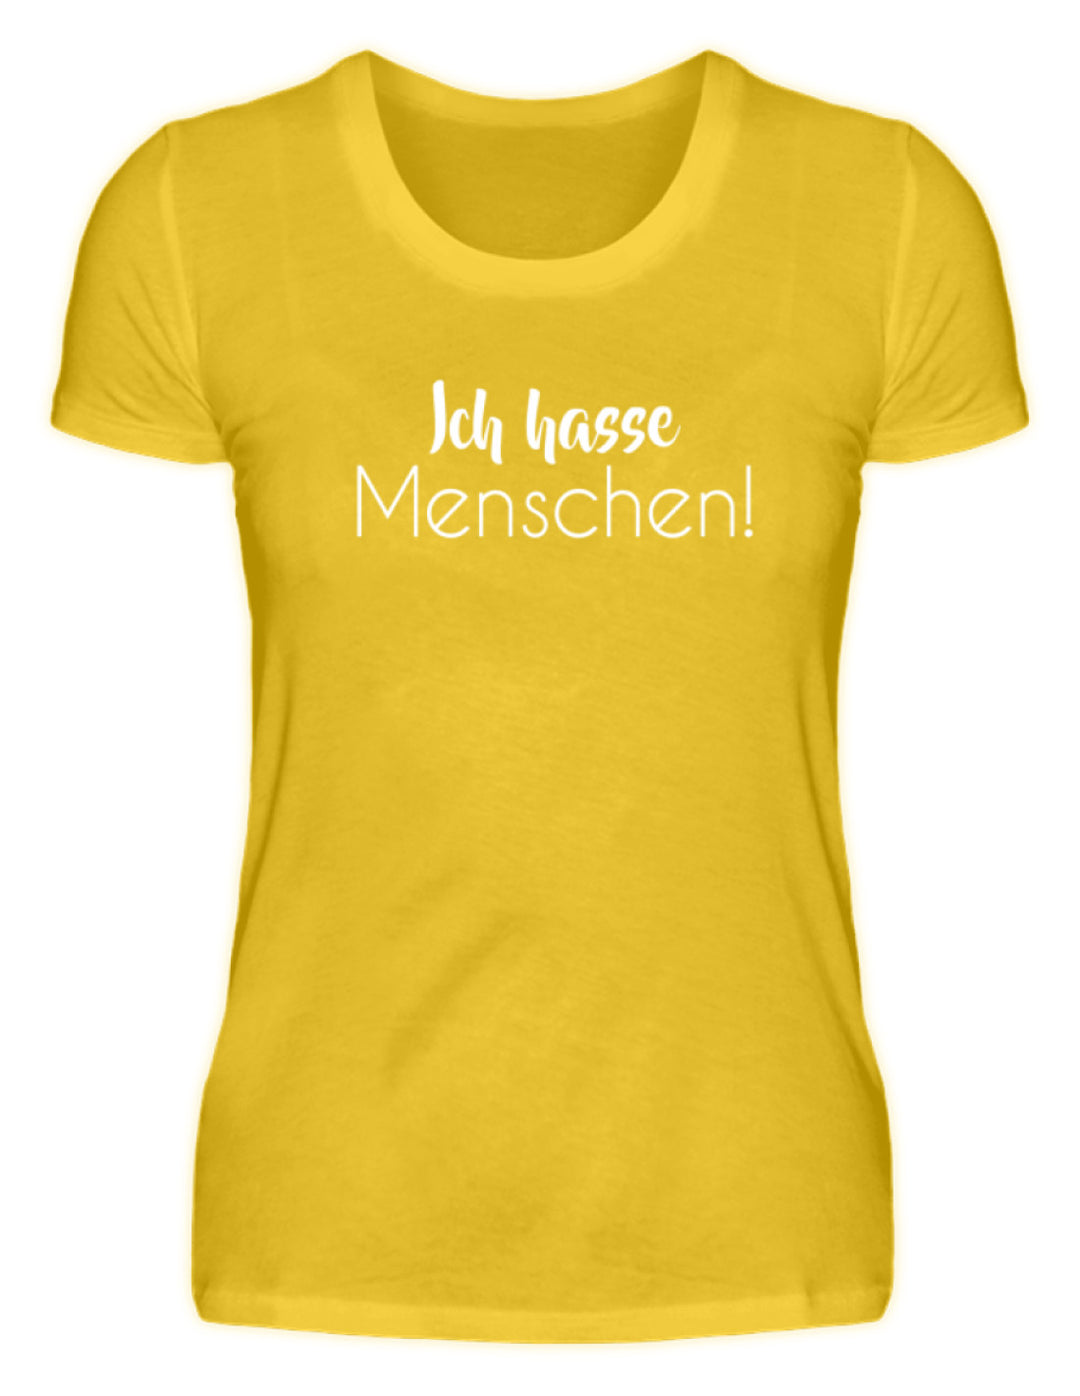 Ich hasse Menschen - Girls only  - Damenshirt - Words on Shirts